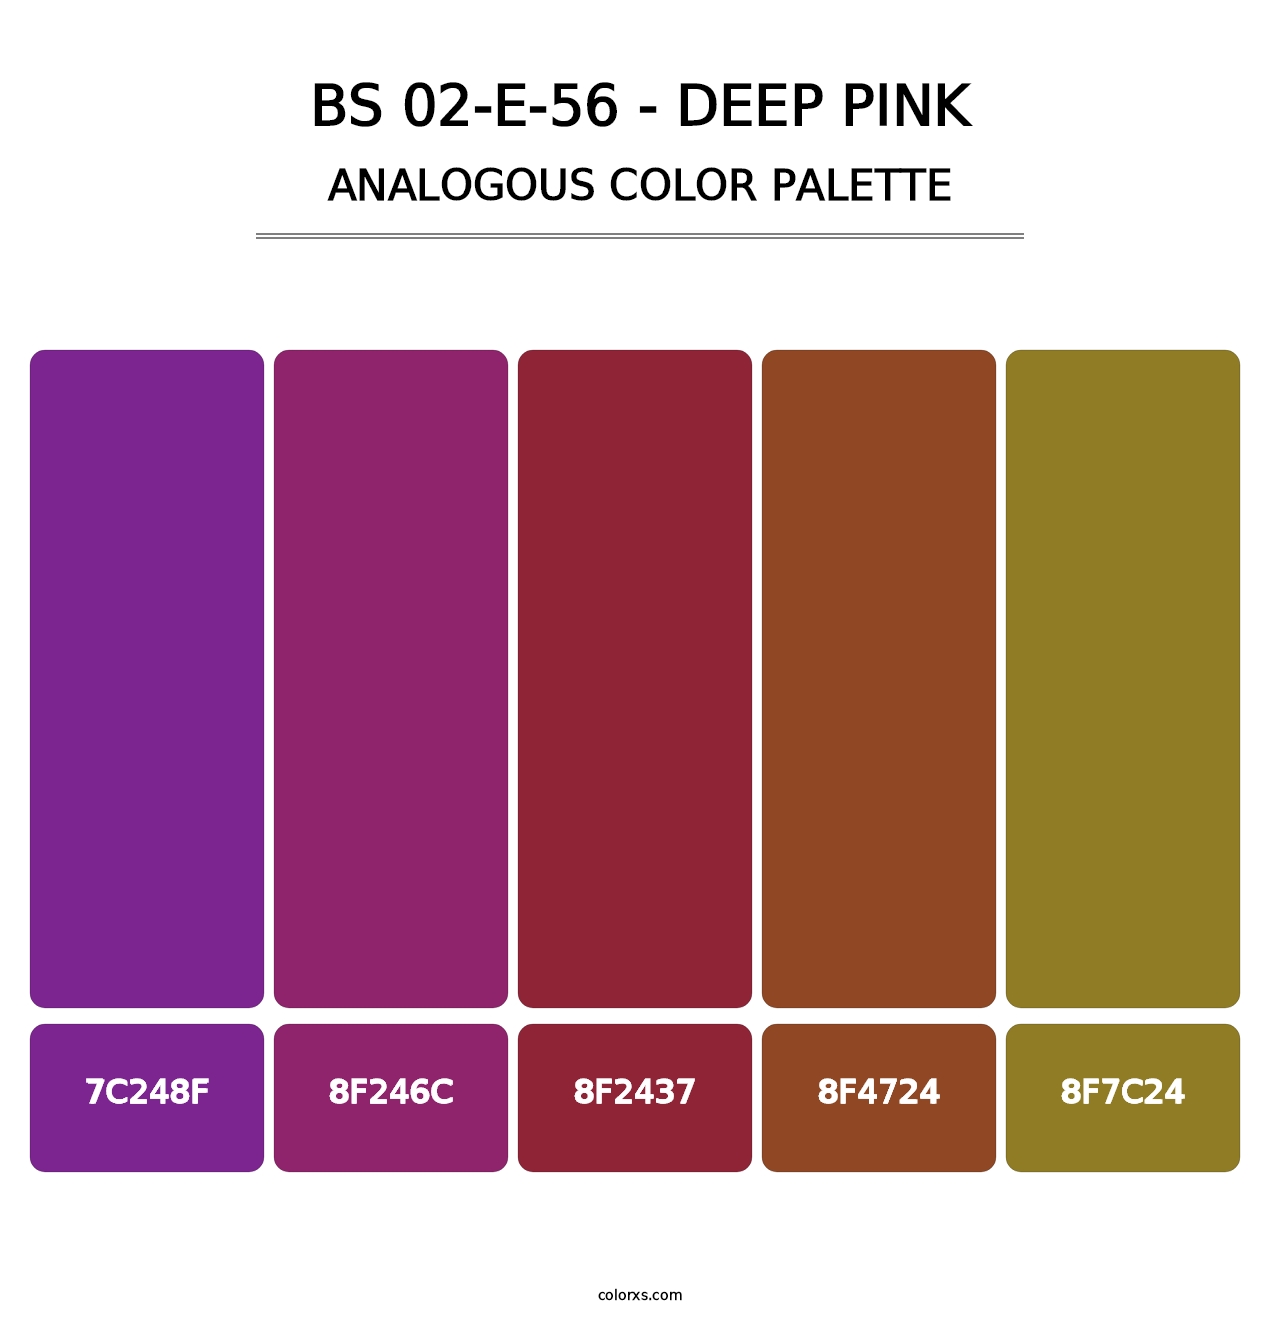 BS 02-E-56 - Deep Pink - Analogous Color Palette